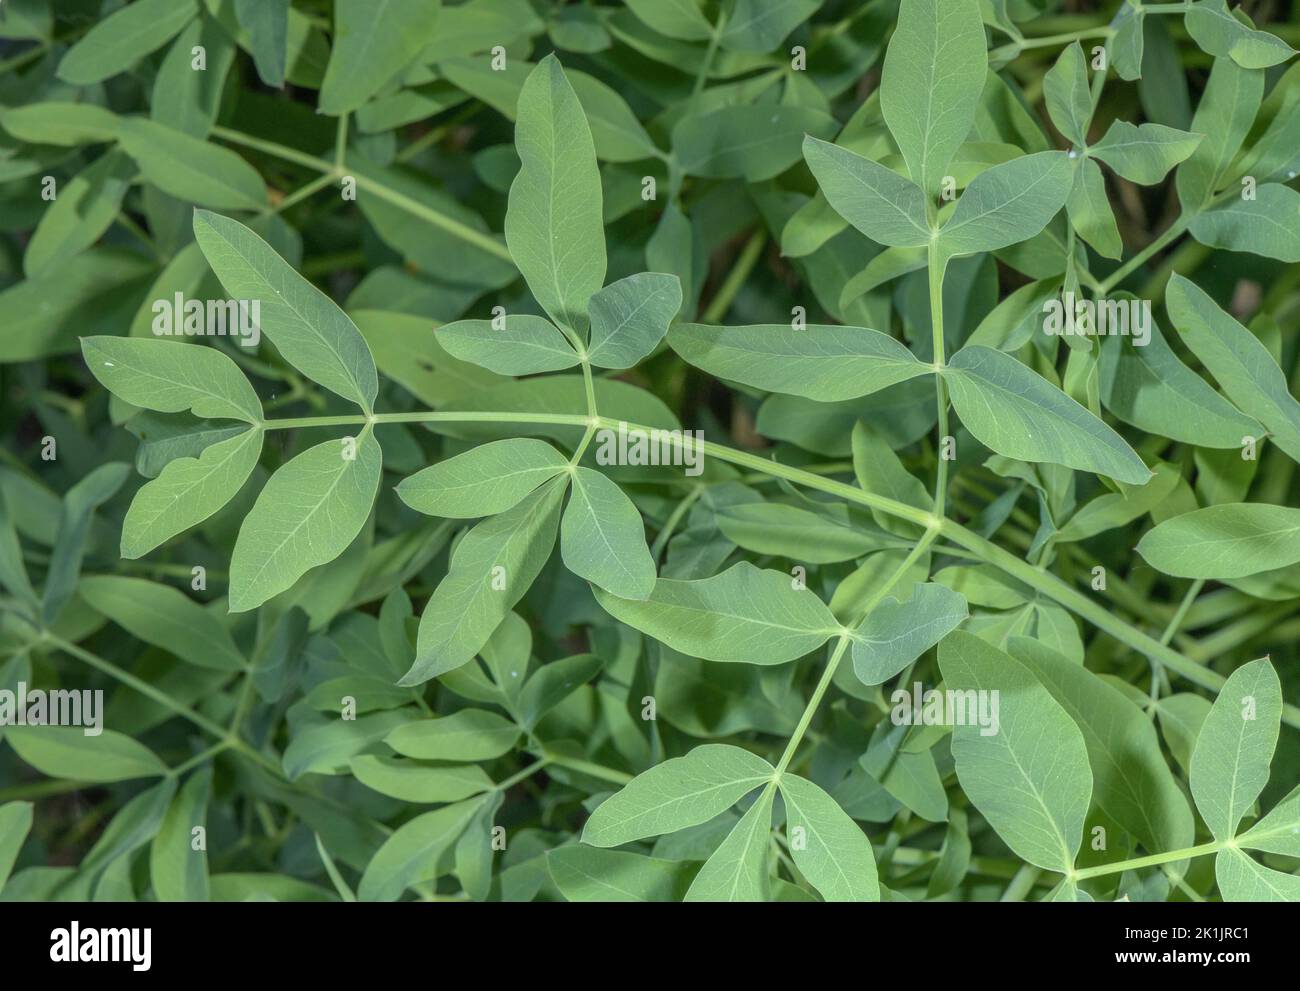 Leaves of Sermountain, Laserpitium siler. Stock Photo